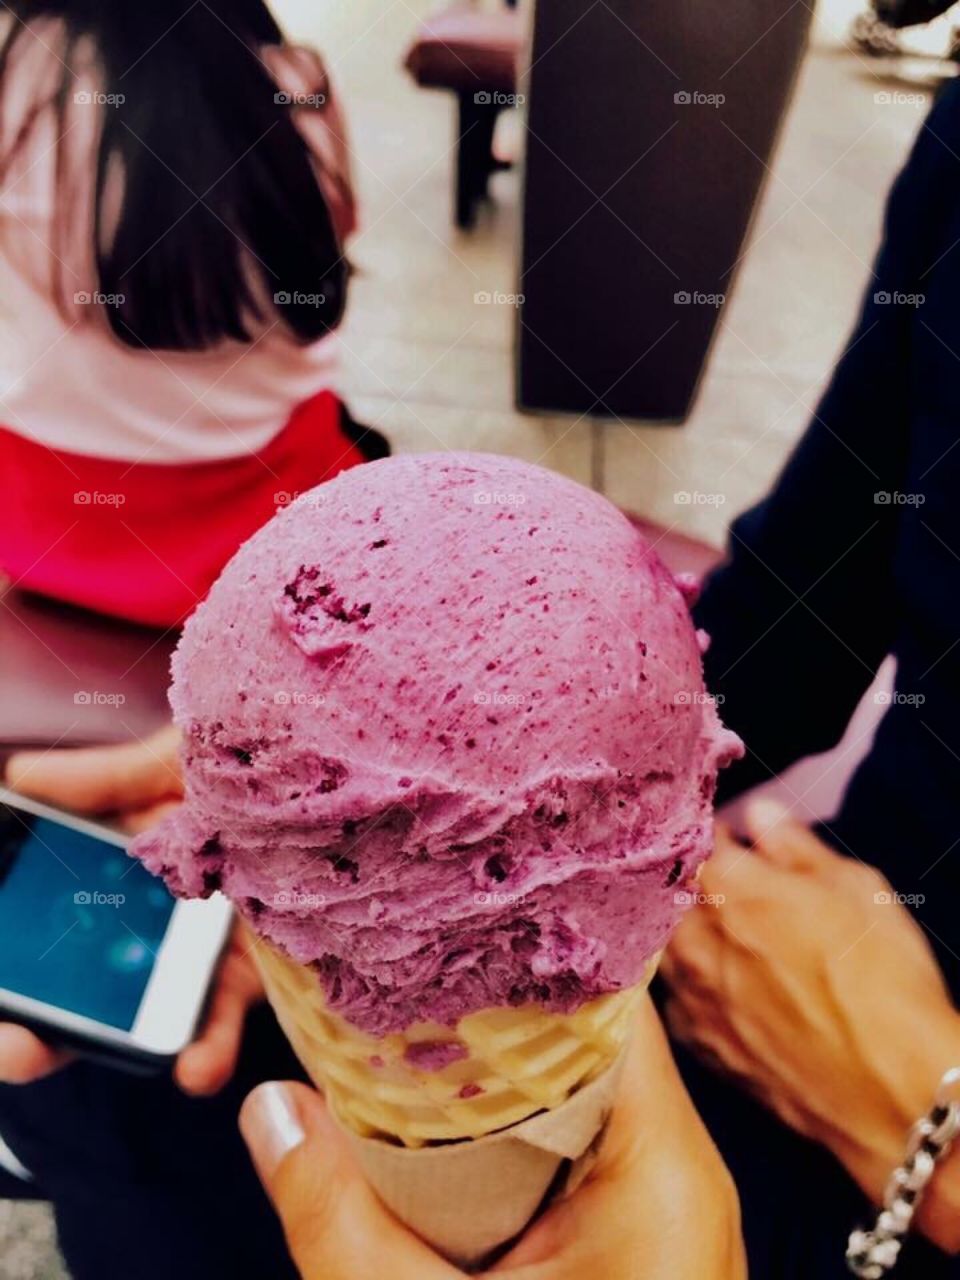 Blueberries ice cream 